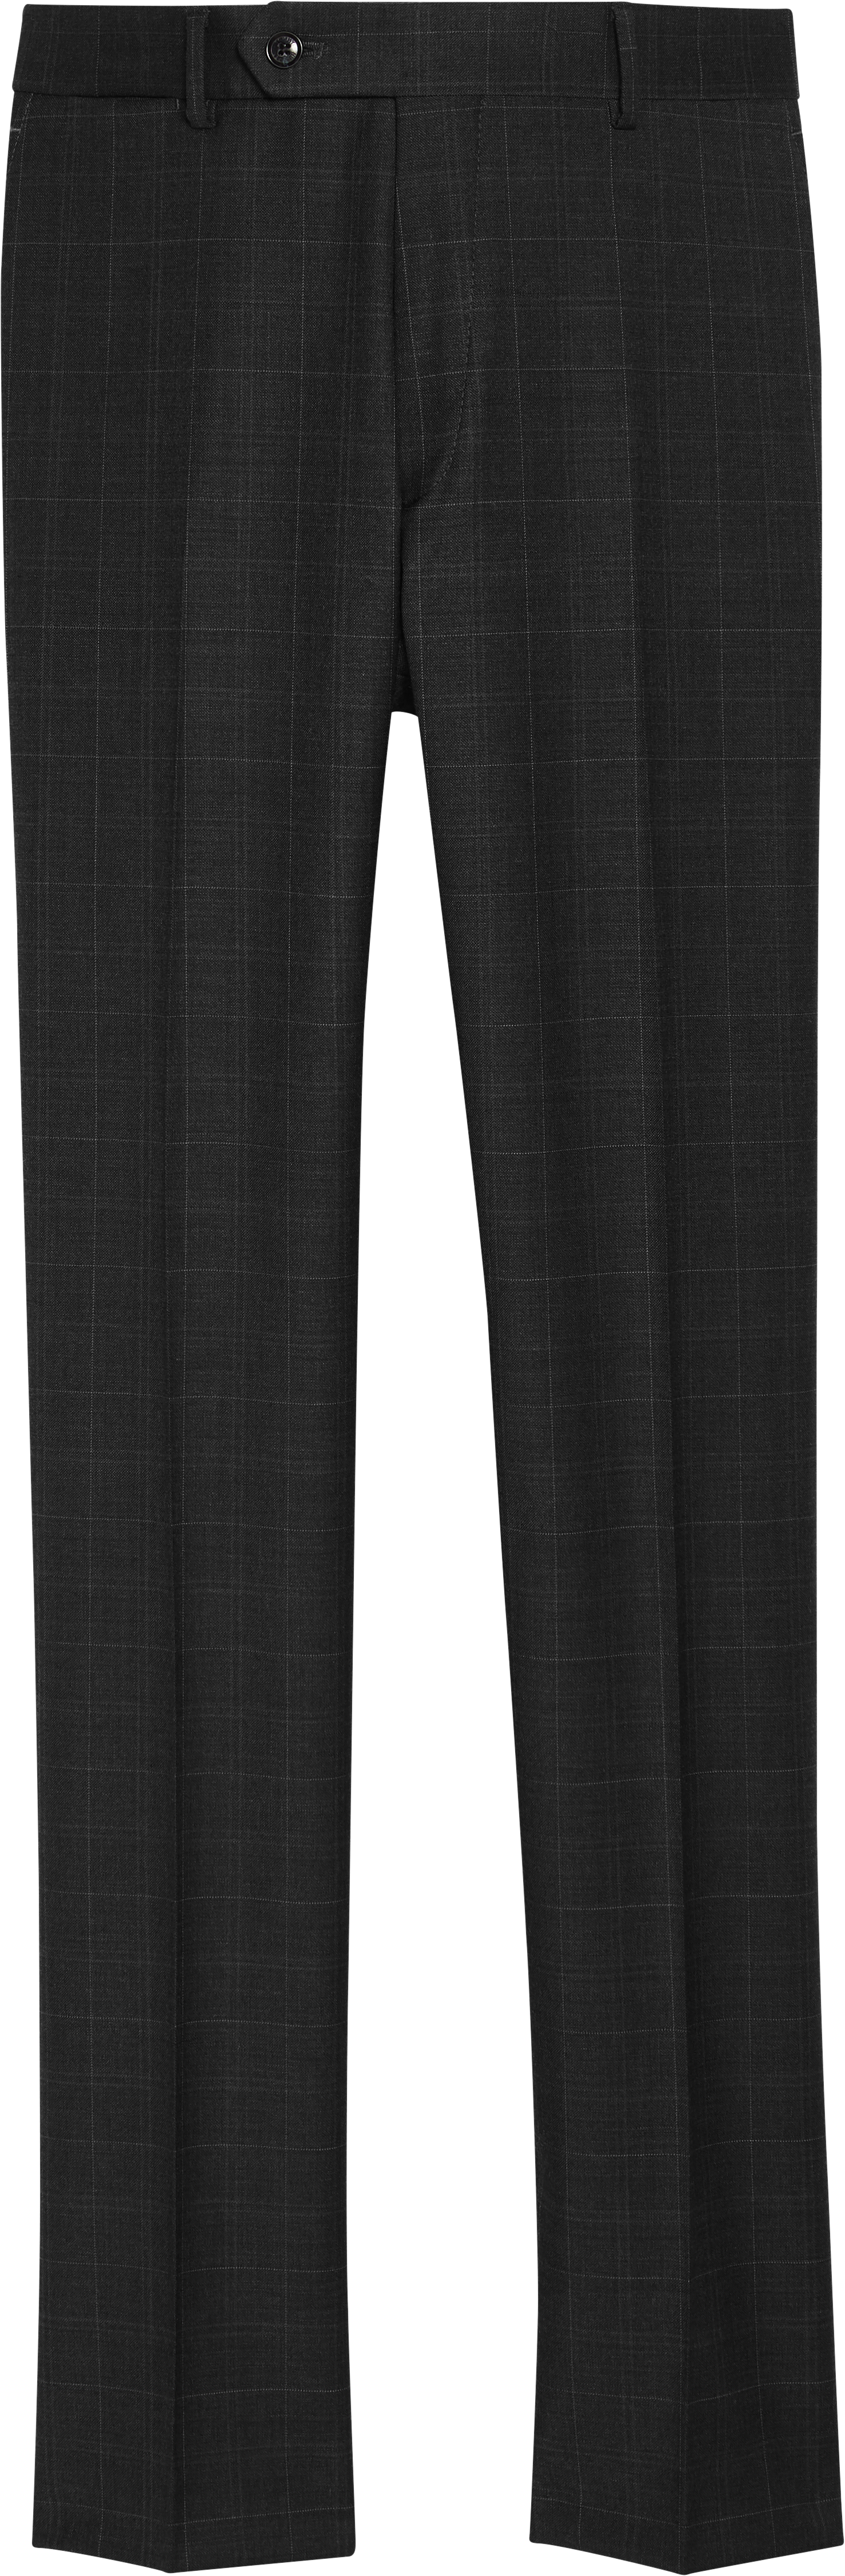 | Fit Pants Separate Hilfiger Suit Men\'s Wearhouse Tommy Pants| Modern